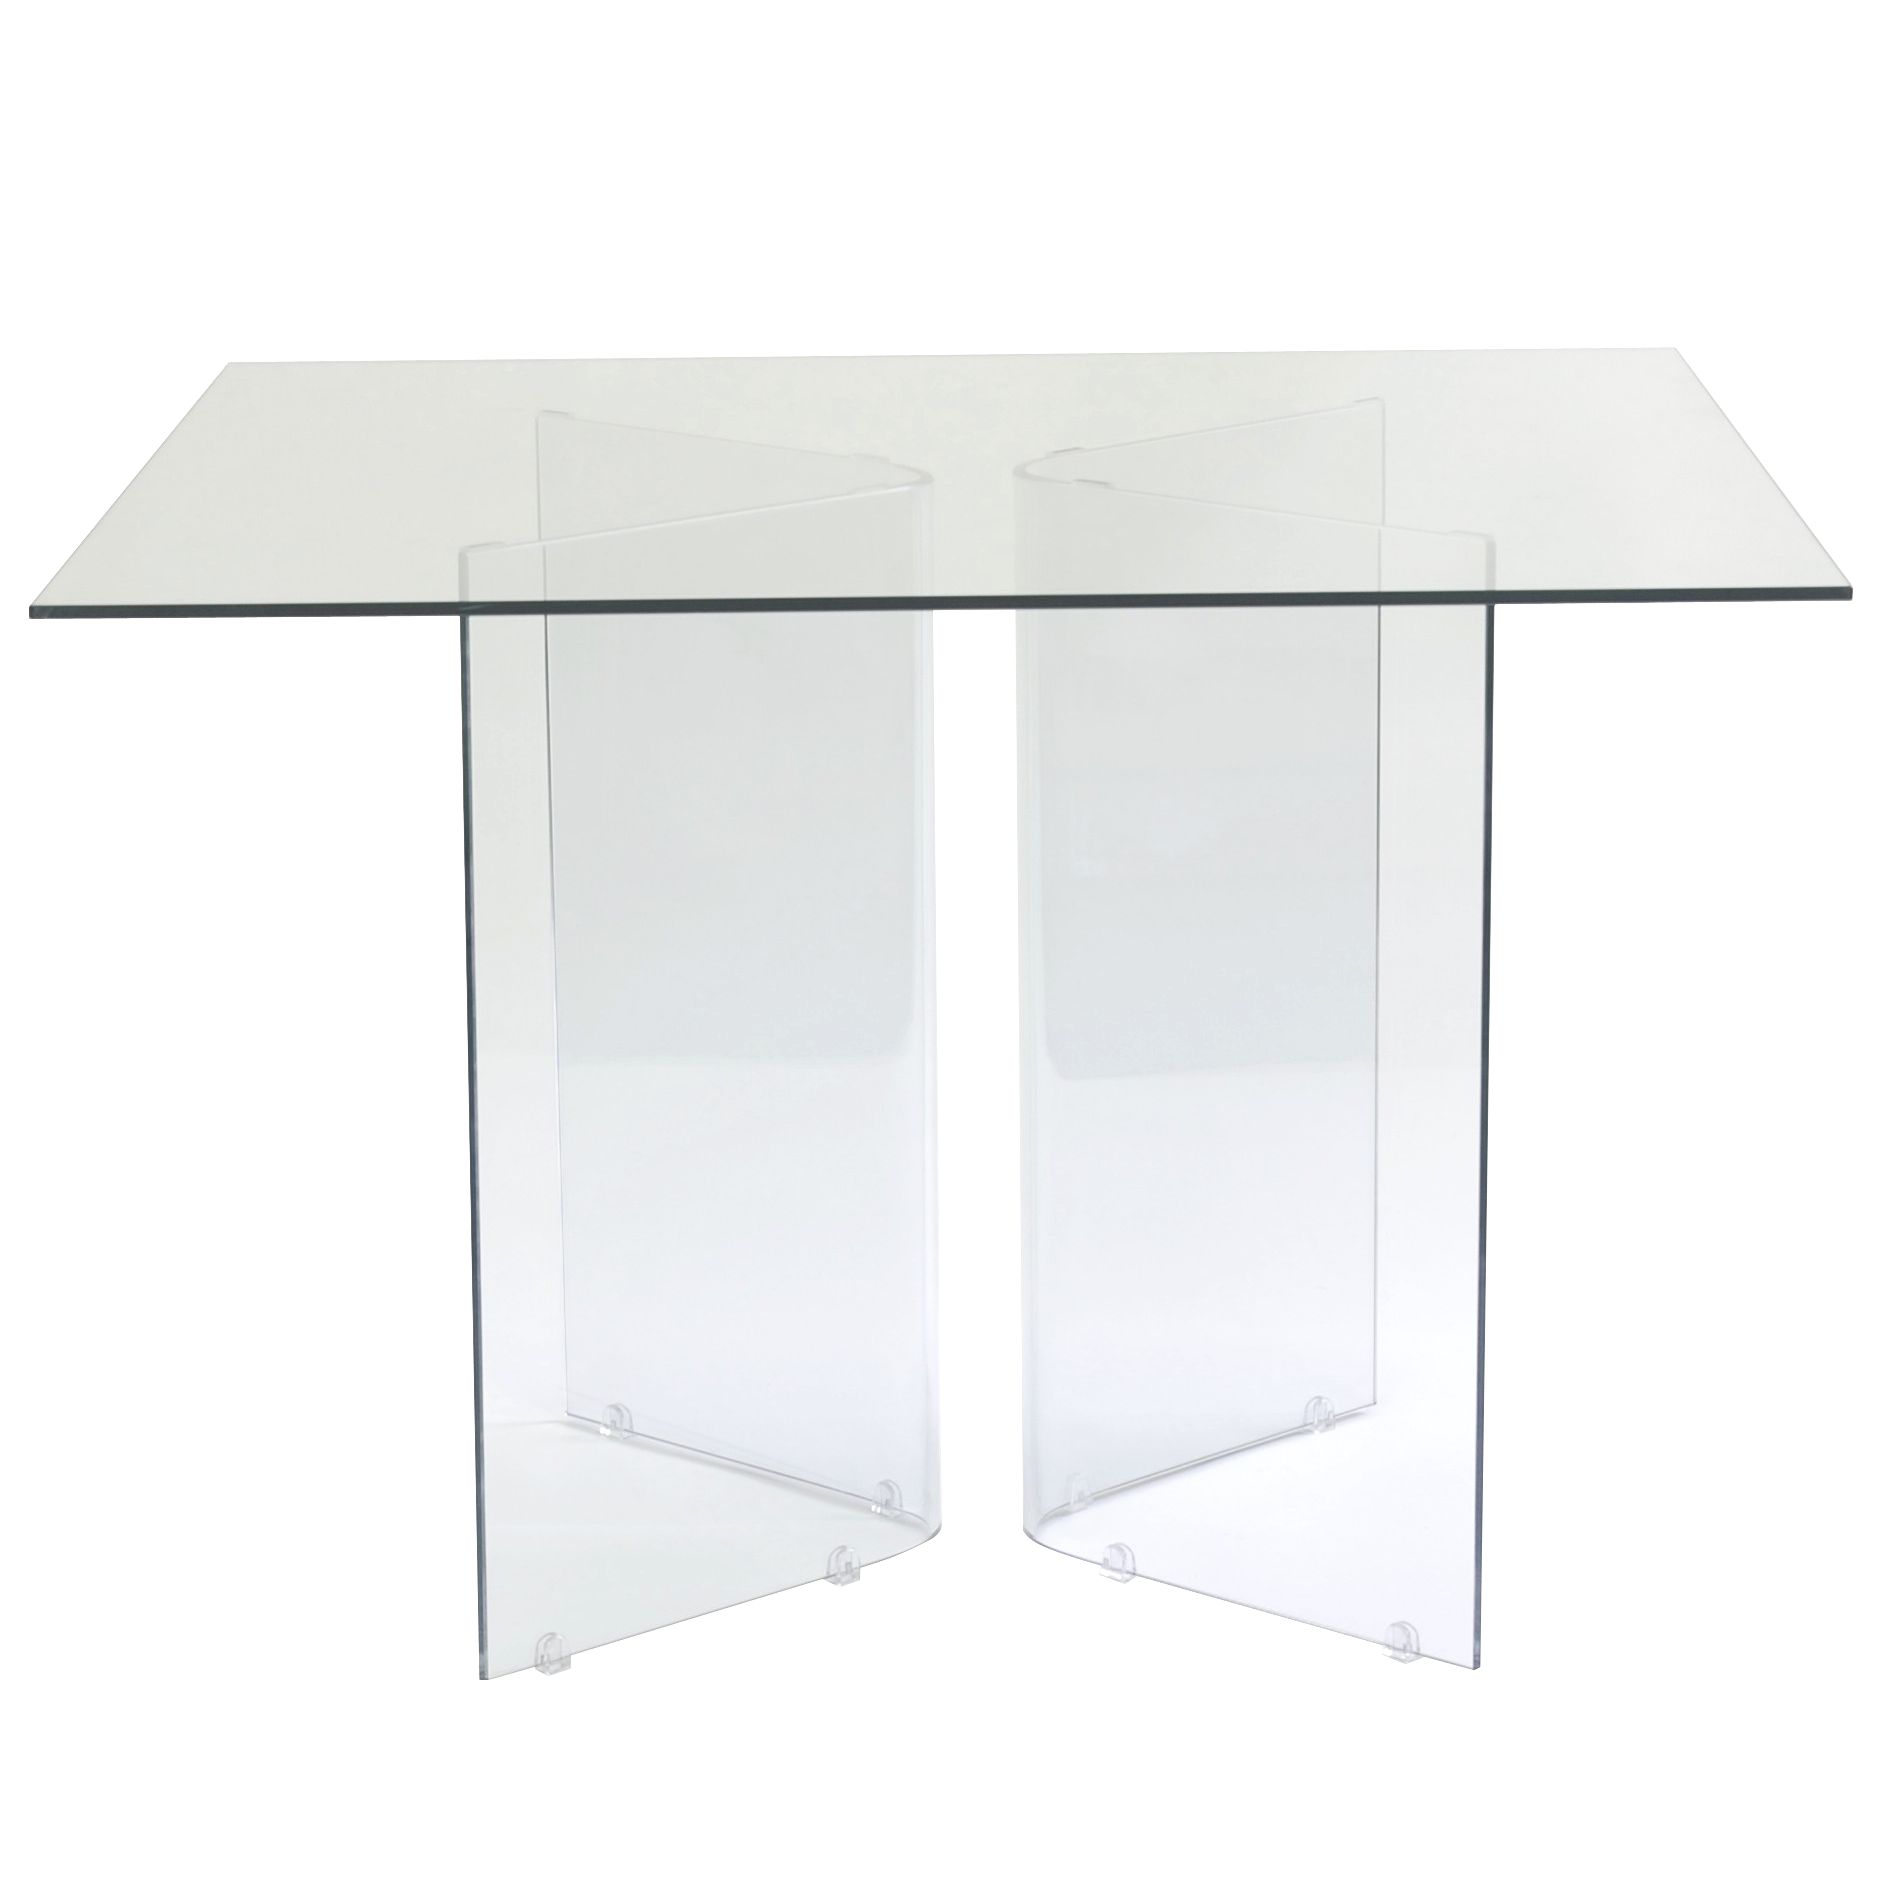 John Lewis Apollo Square Table, 110cm